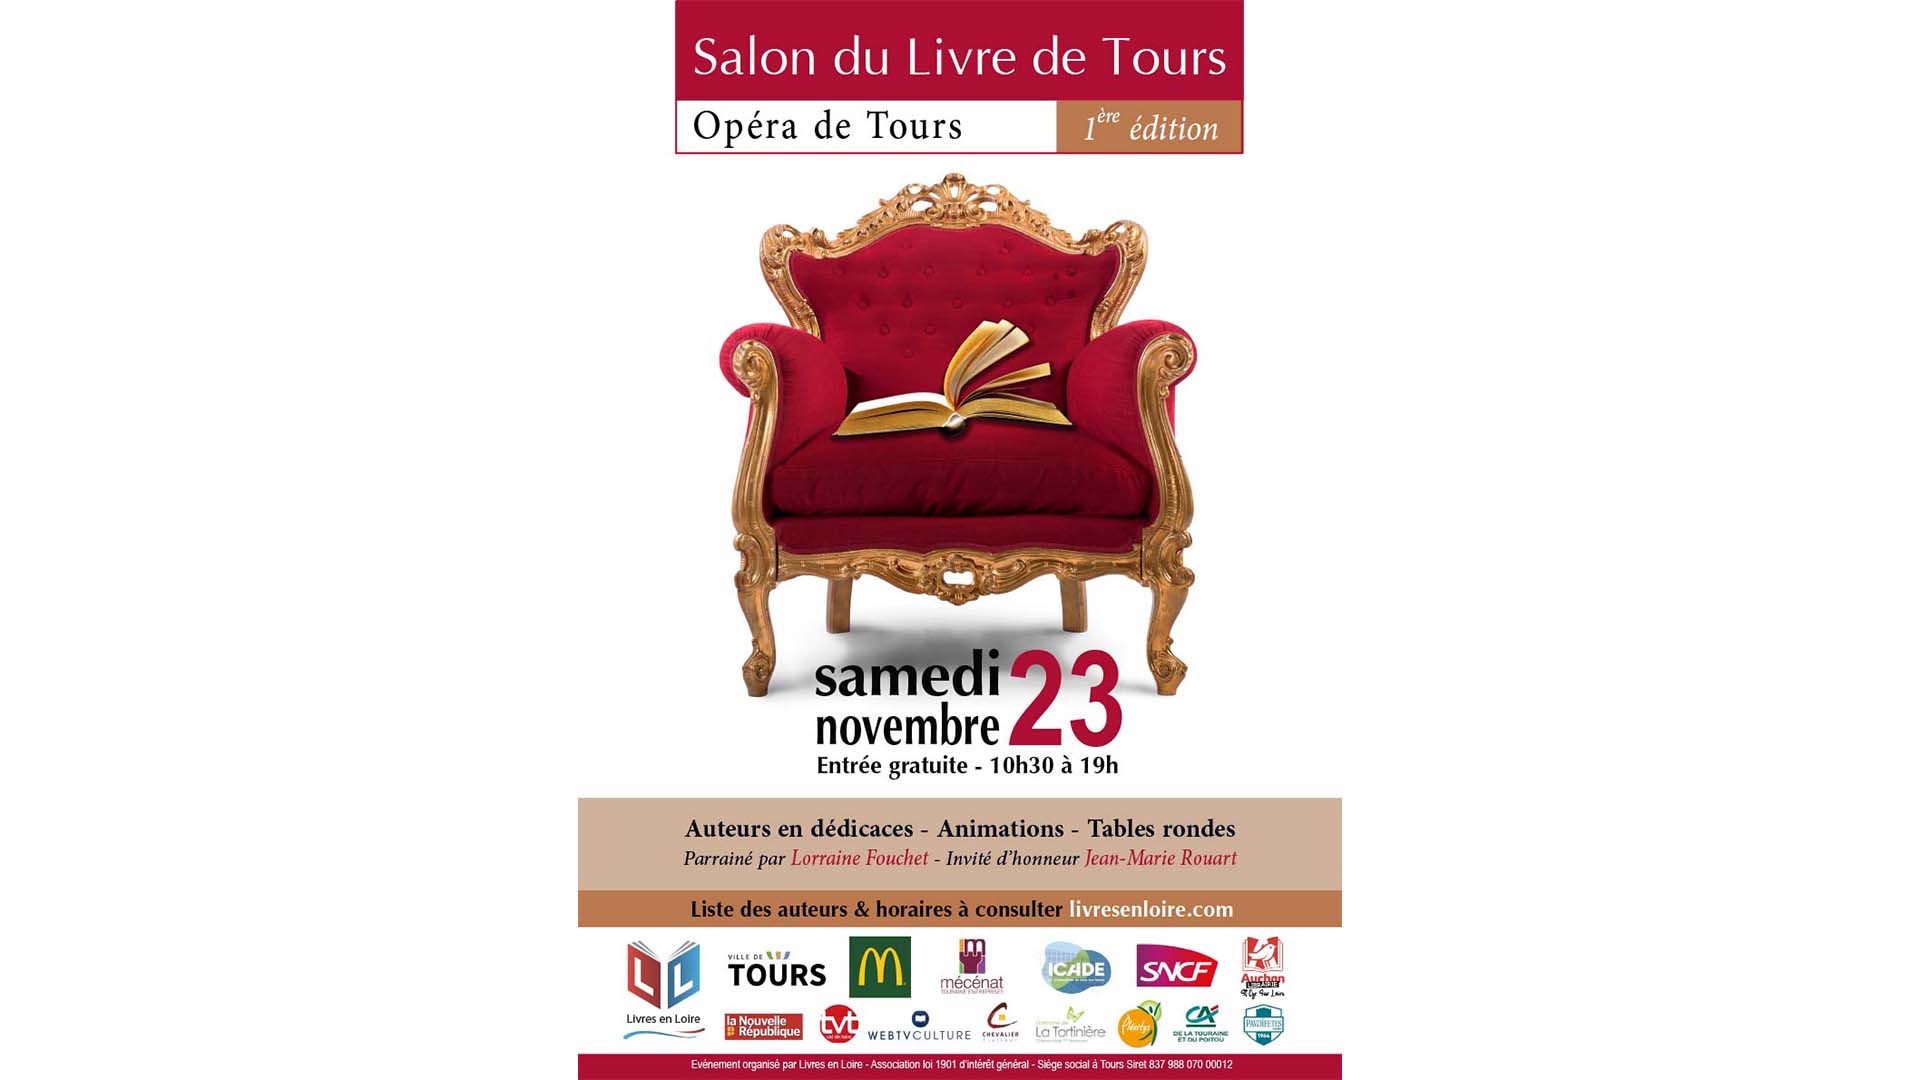 Salon du Livre de Tours 2019